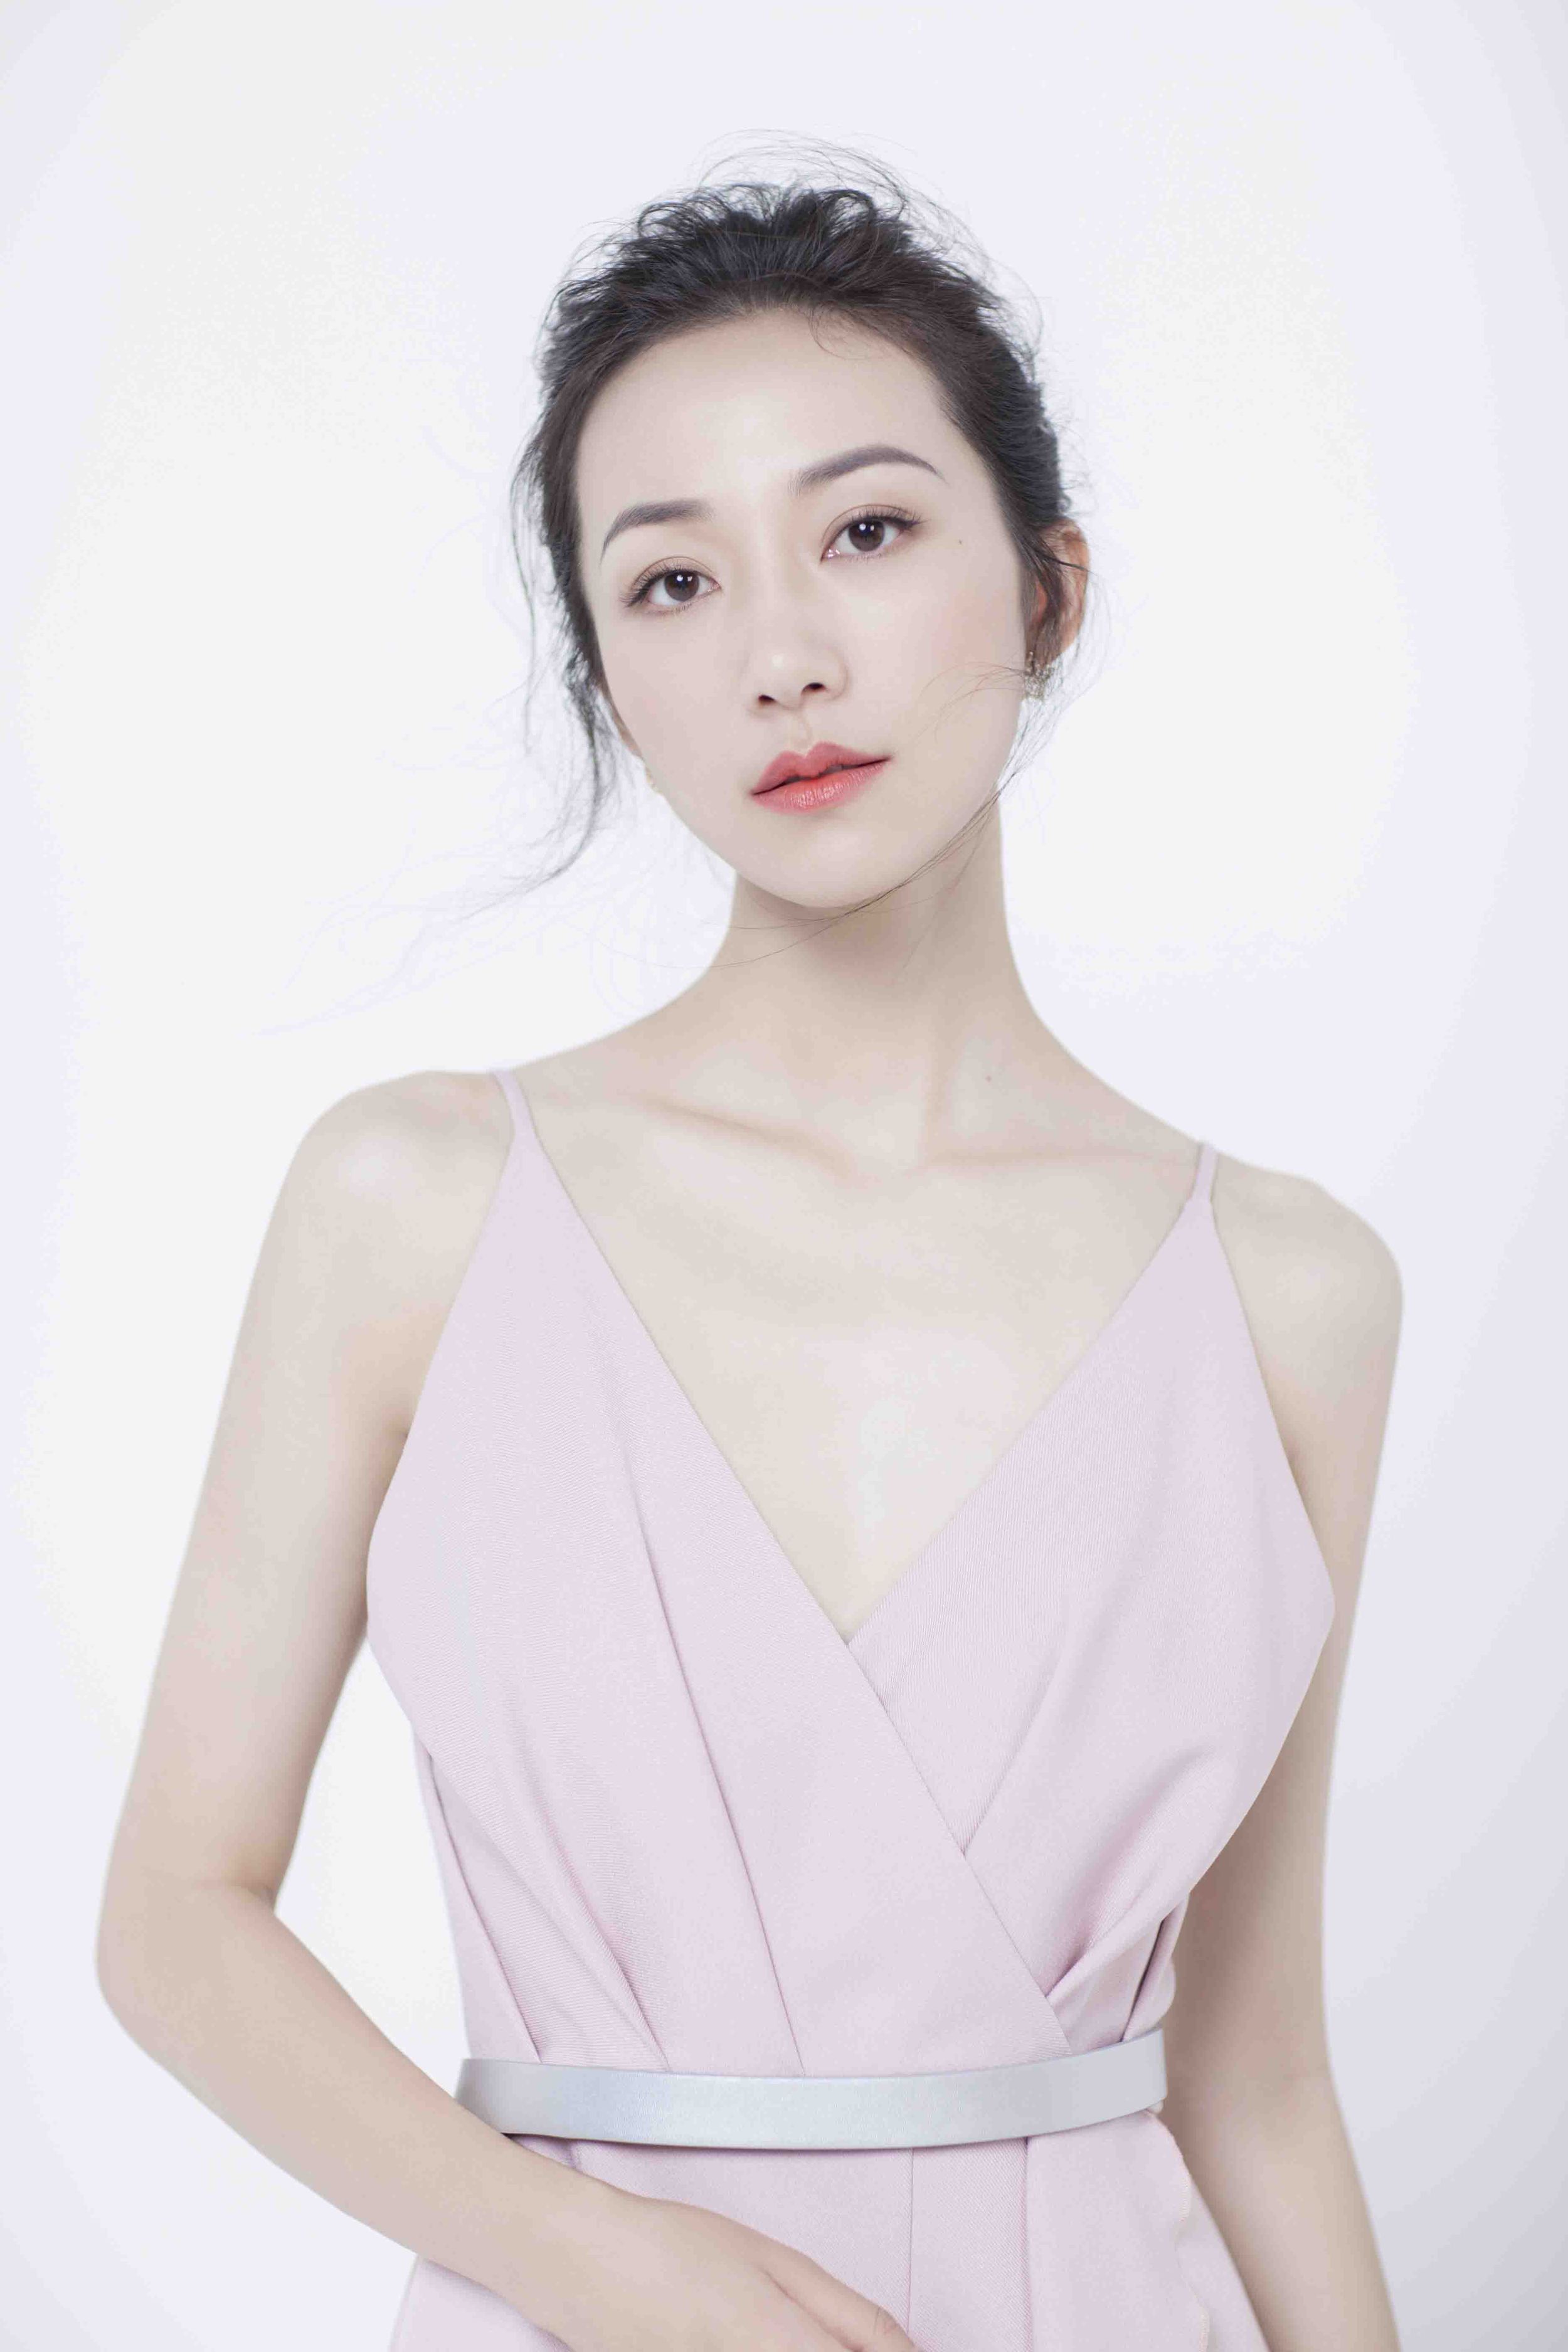 李沁,1990年出生于江苏苏州,中国内地女演员